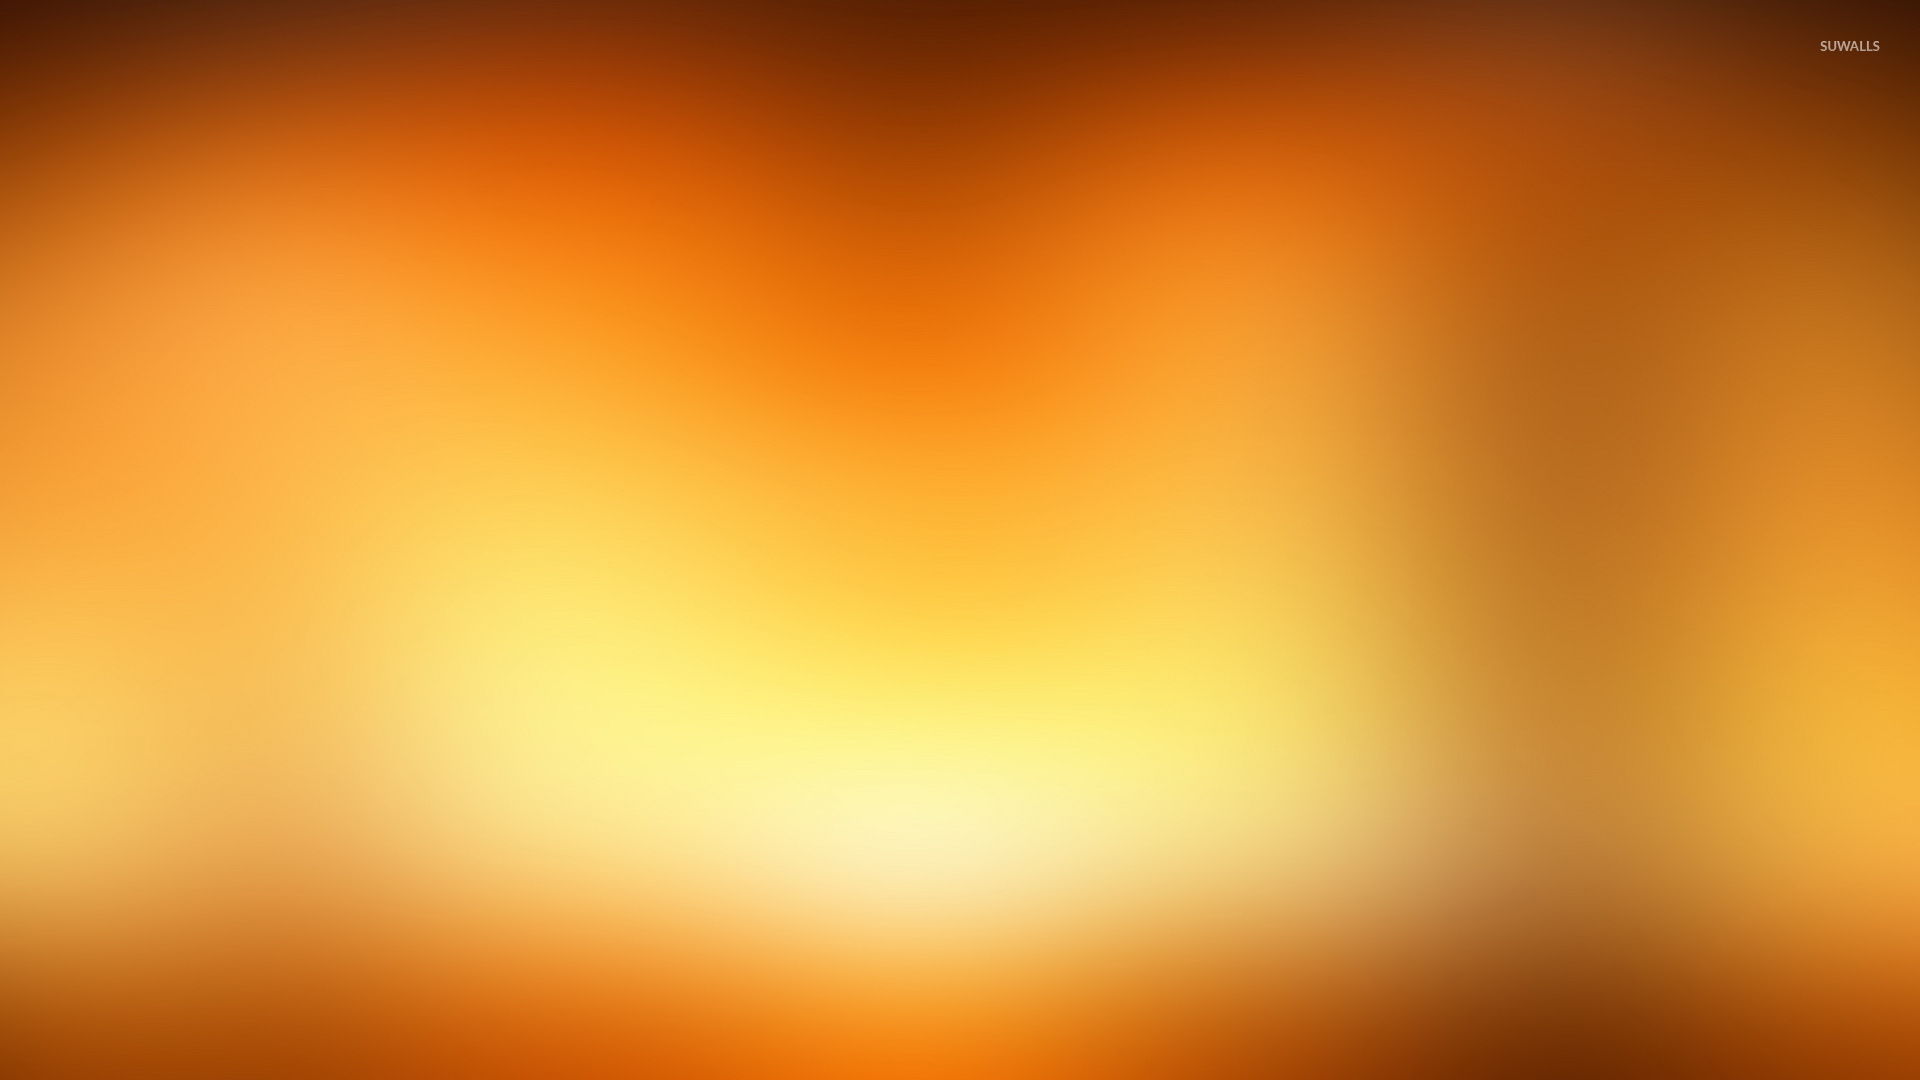 Golden blur wallpaper - Abstract wallpapers - #45685